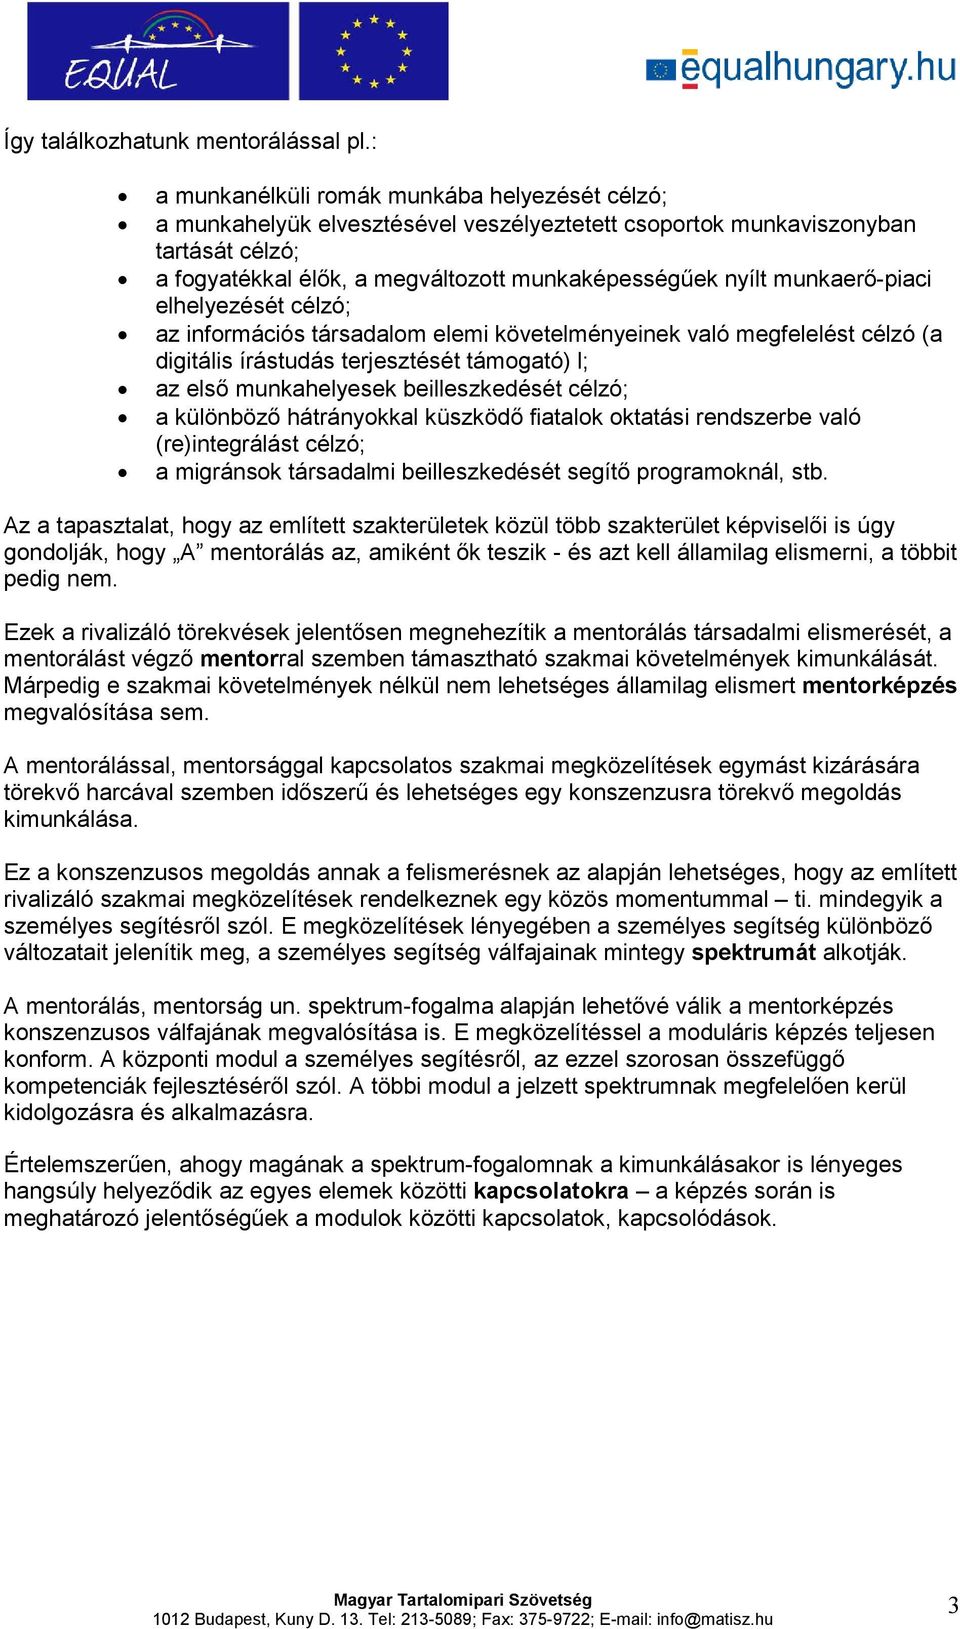 munkaerı-piaci elhelyezését célzó; az információs társadalom elemi követelményeinek való megfelelést célzó (a digitális írástudás terjesztését támogató) l; az elsı munkahelyesek beilleszkedését